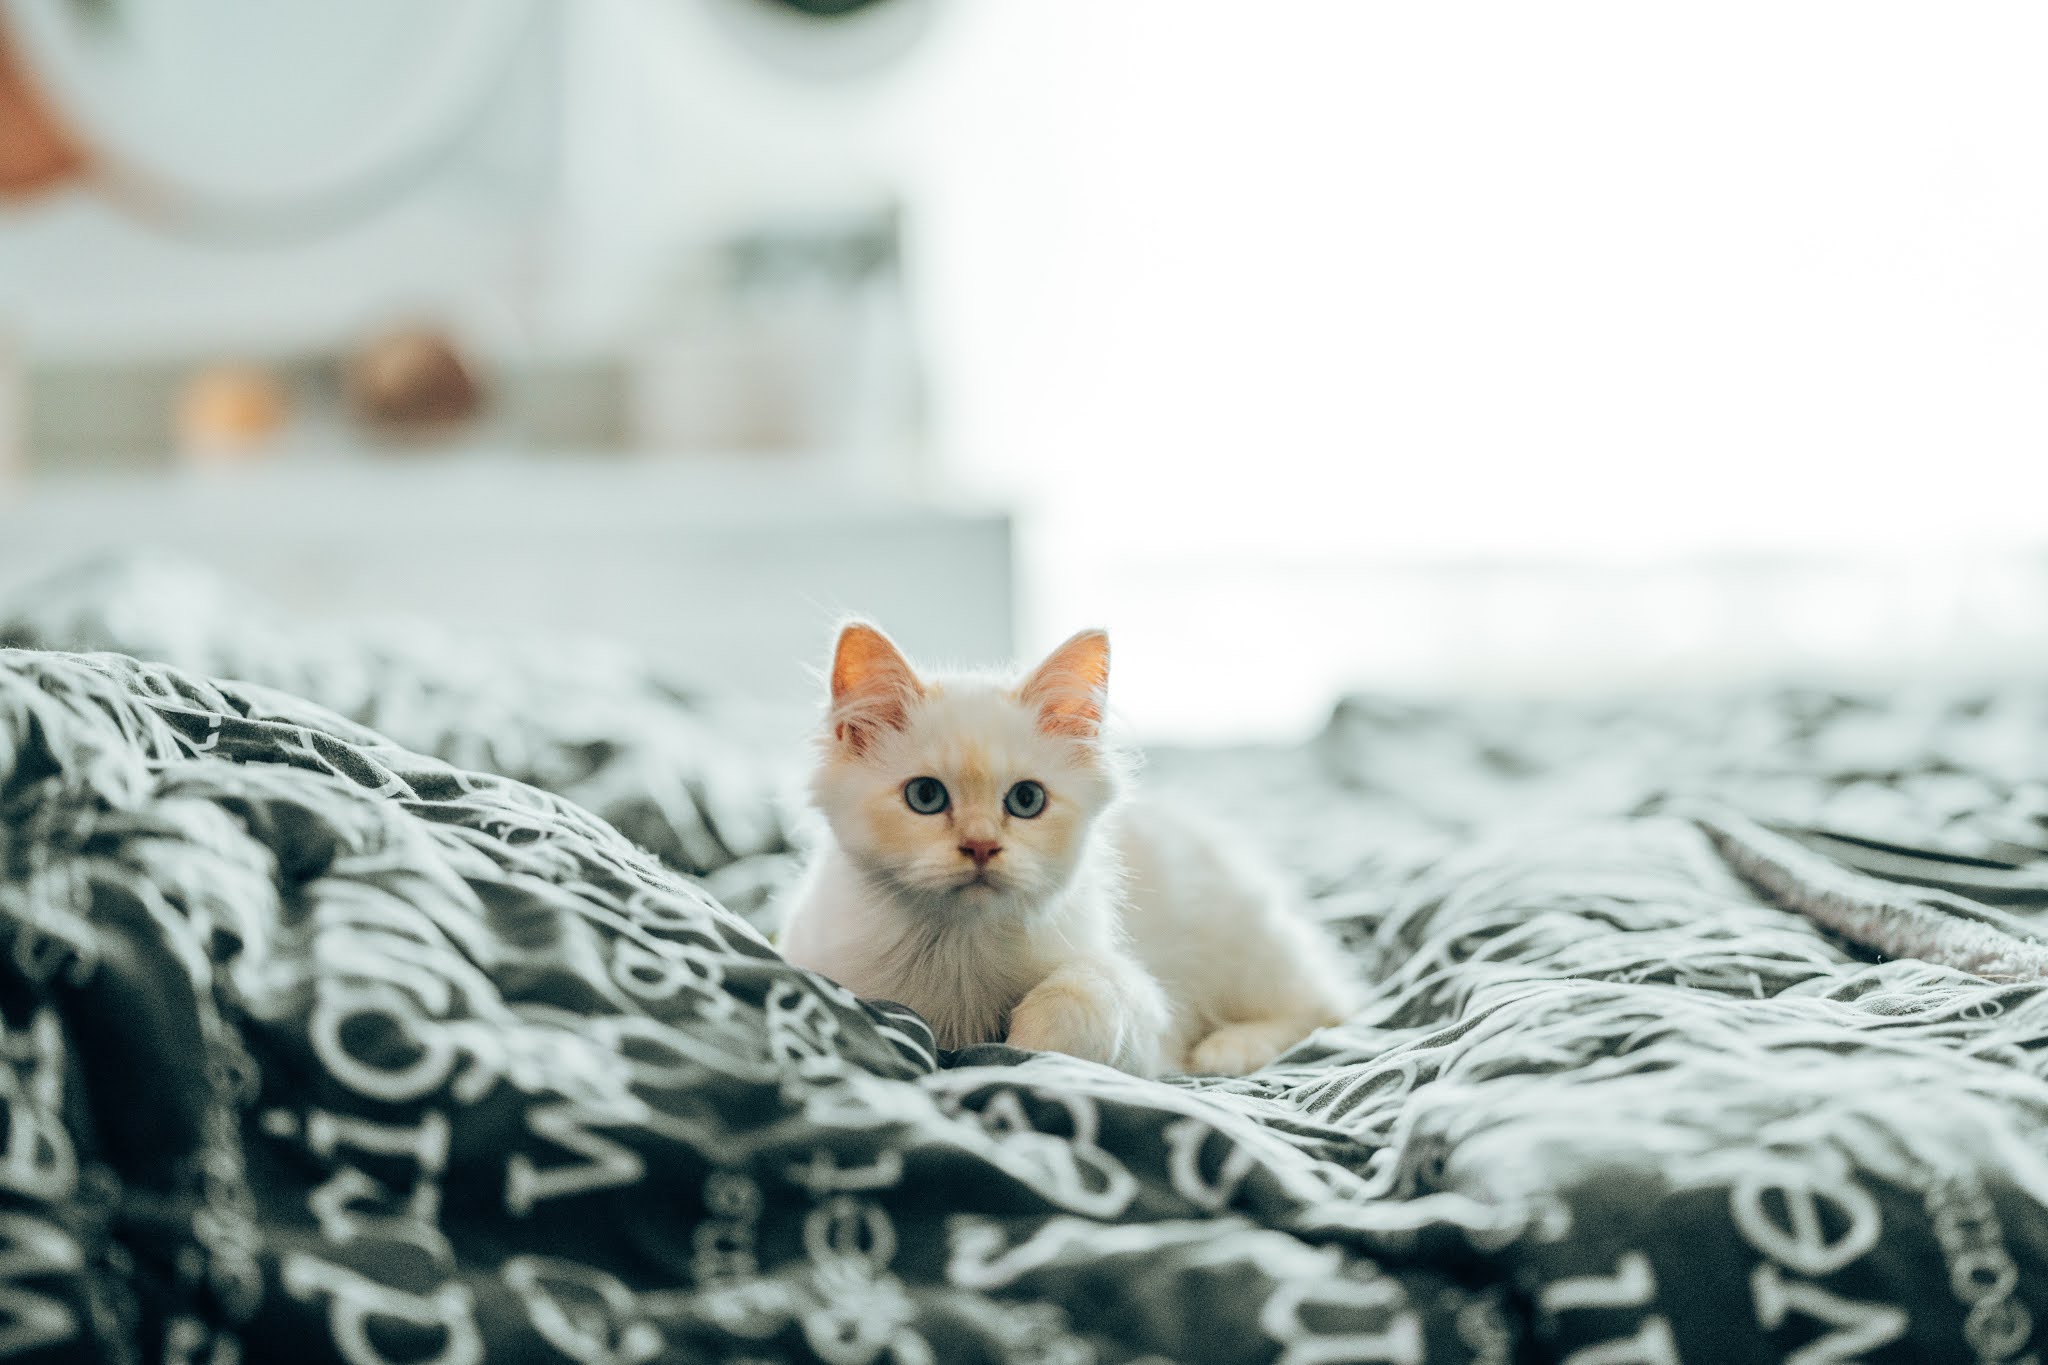 صور قطط كيوت صغيرة و كبيرة خلفيات قطط جميلة جدا